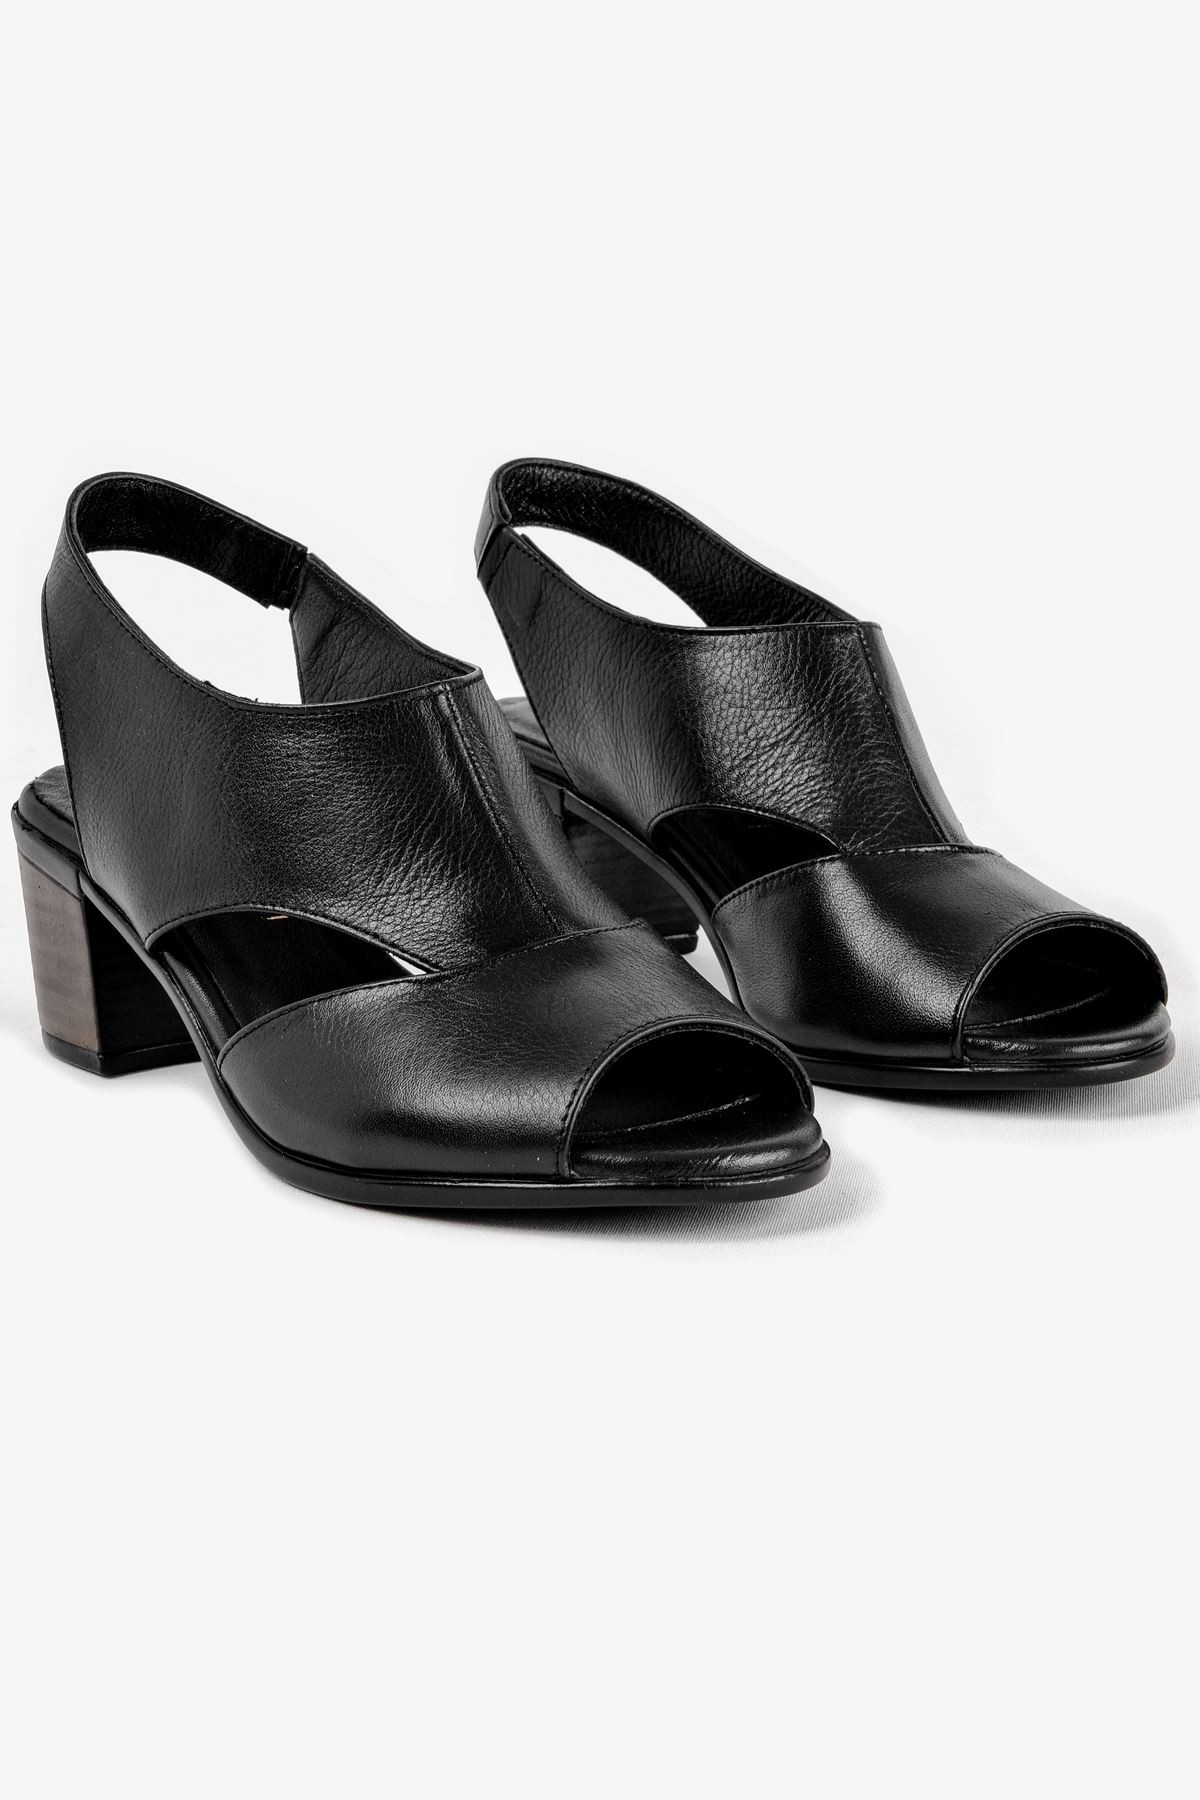 Breda Kadın Hakiki Deri Topuklu Ayakkabı (B2119 ) - Siyah